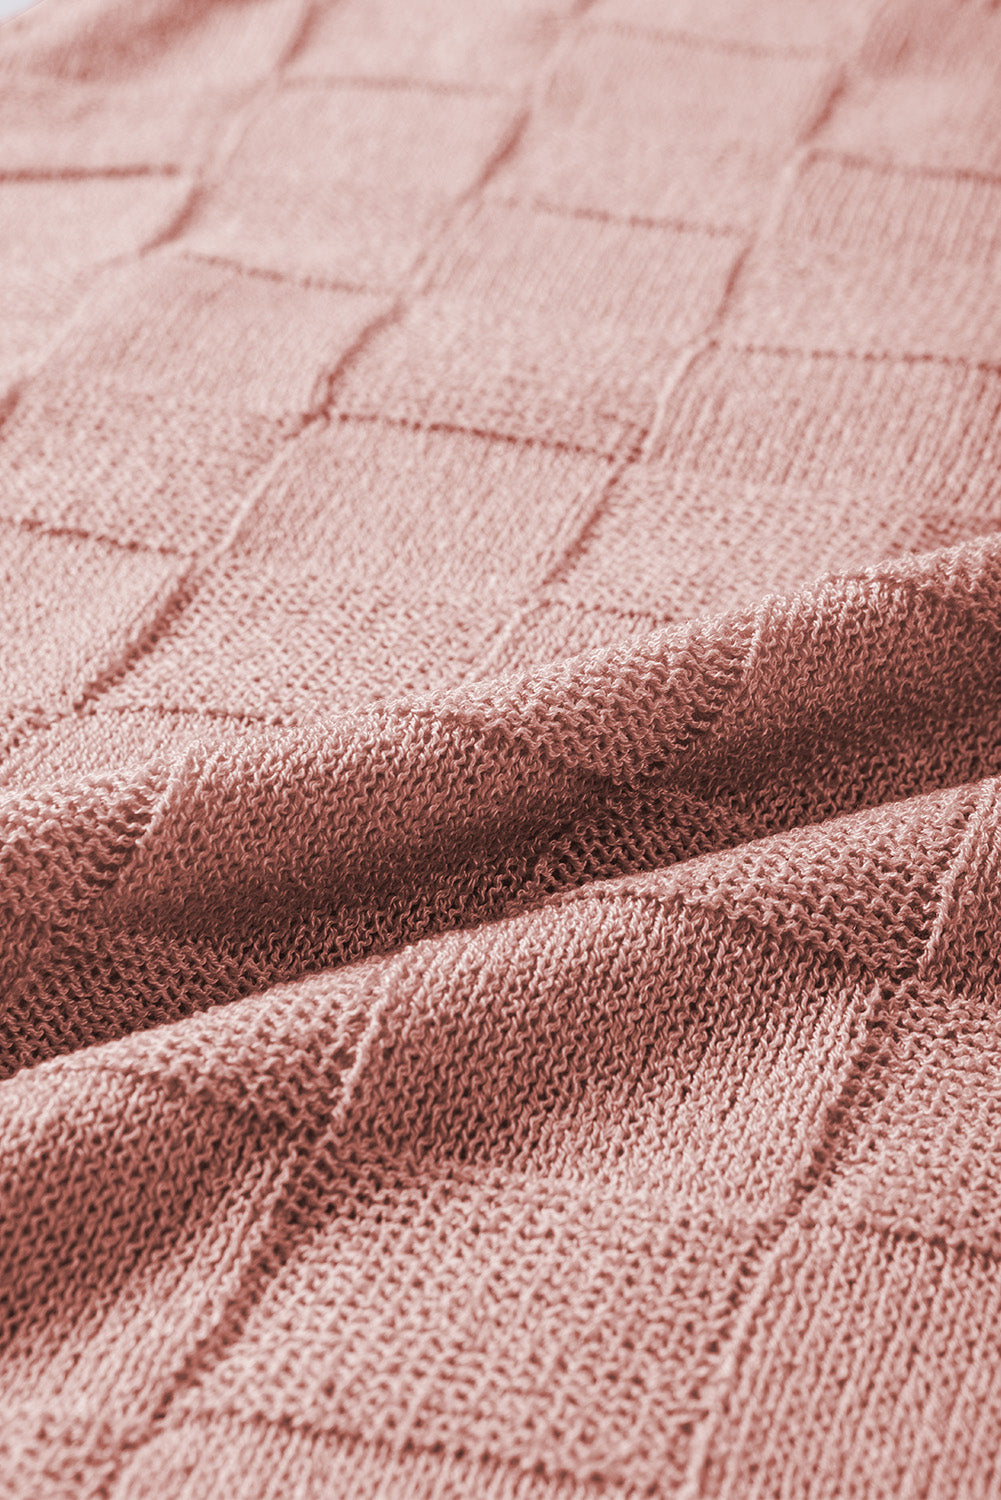 Maglione a maniche corte lavorato a maglia strutturata a reticolo grigio